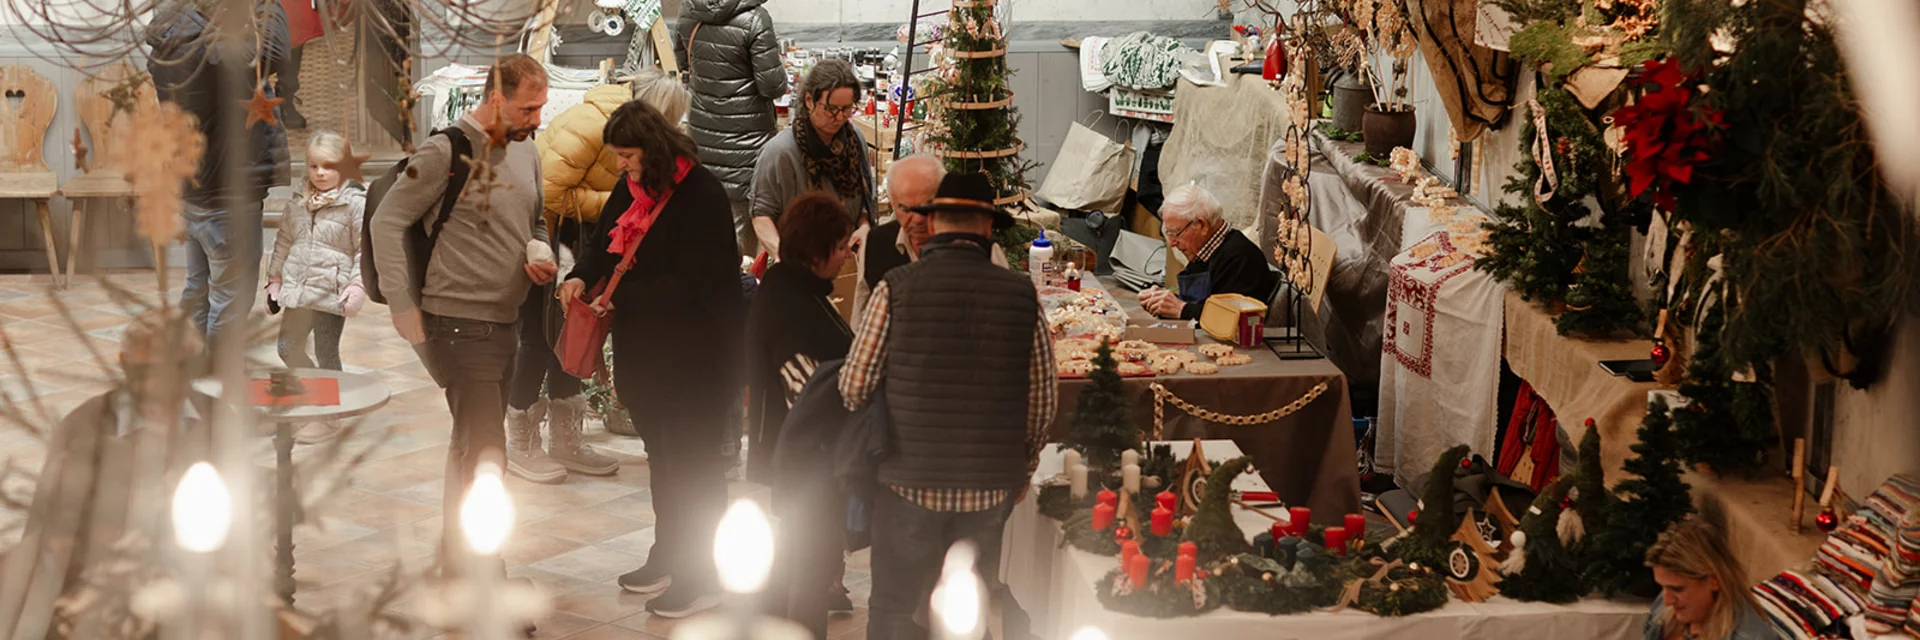 Weihnachtsmarkt im Rossstall | © Südsteiermark | AchromaticPhotography